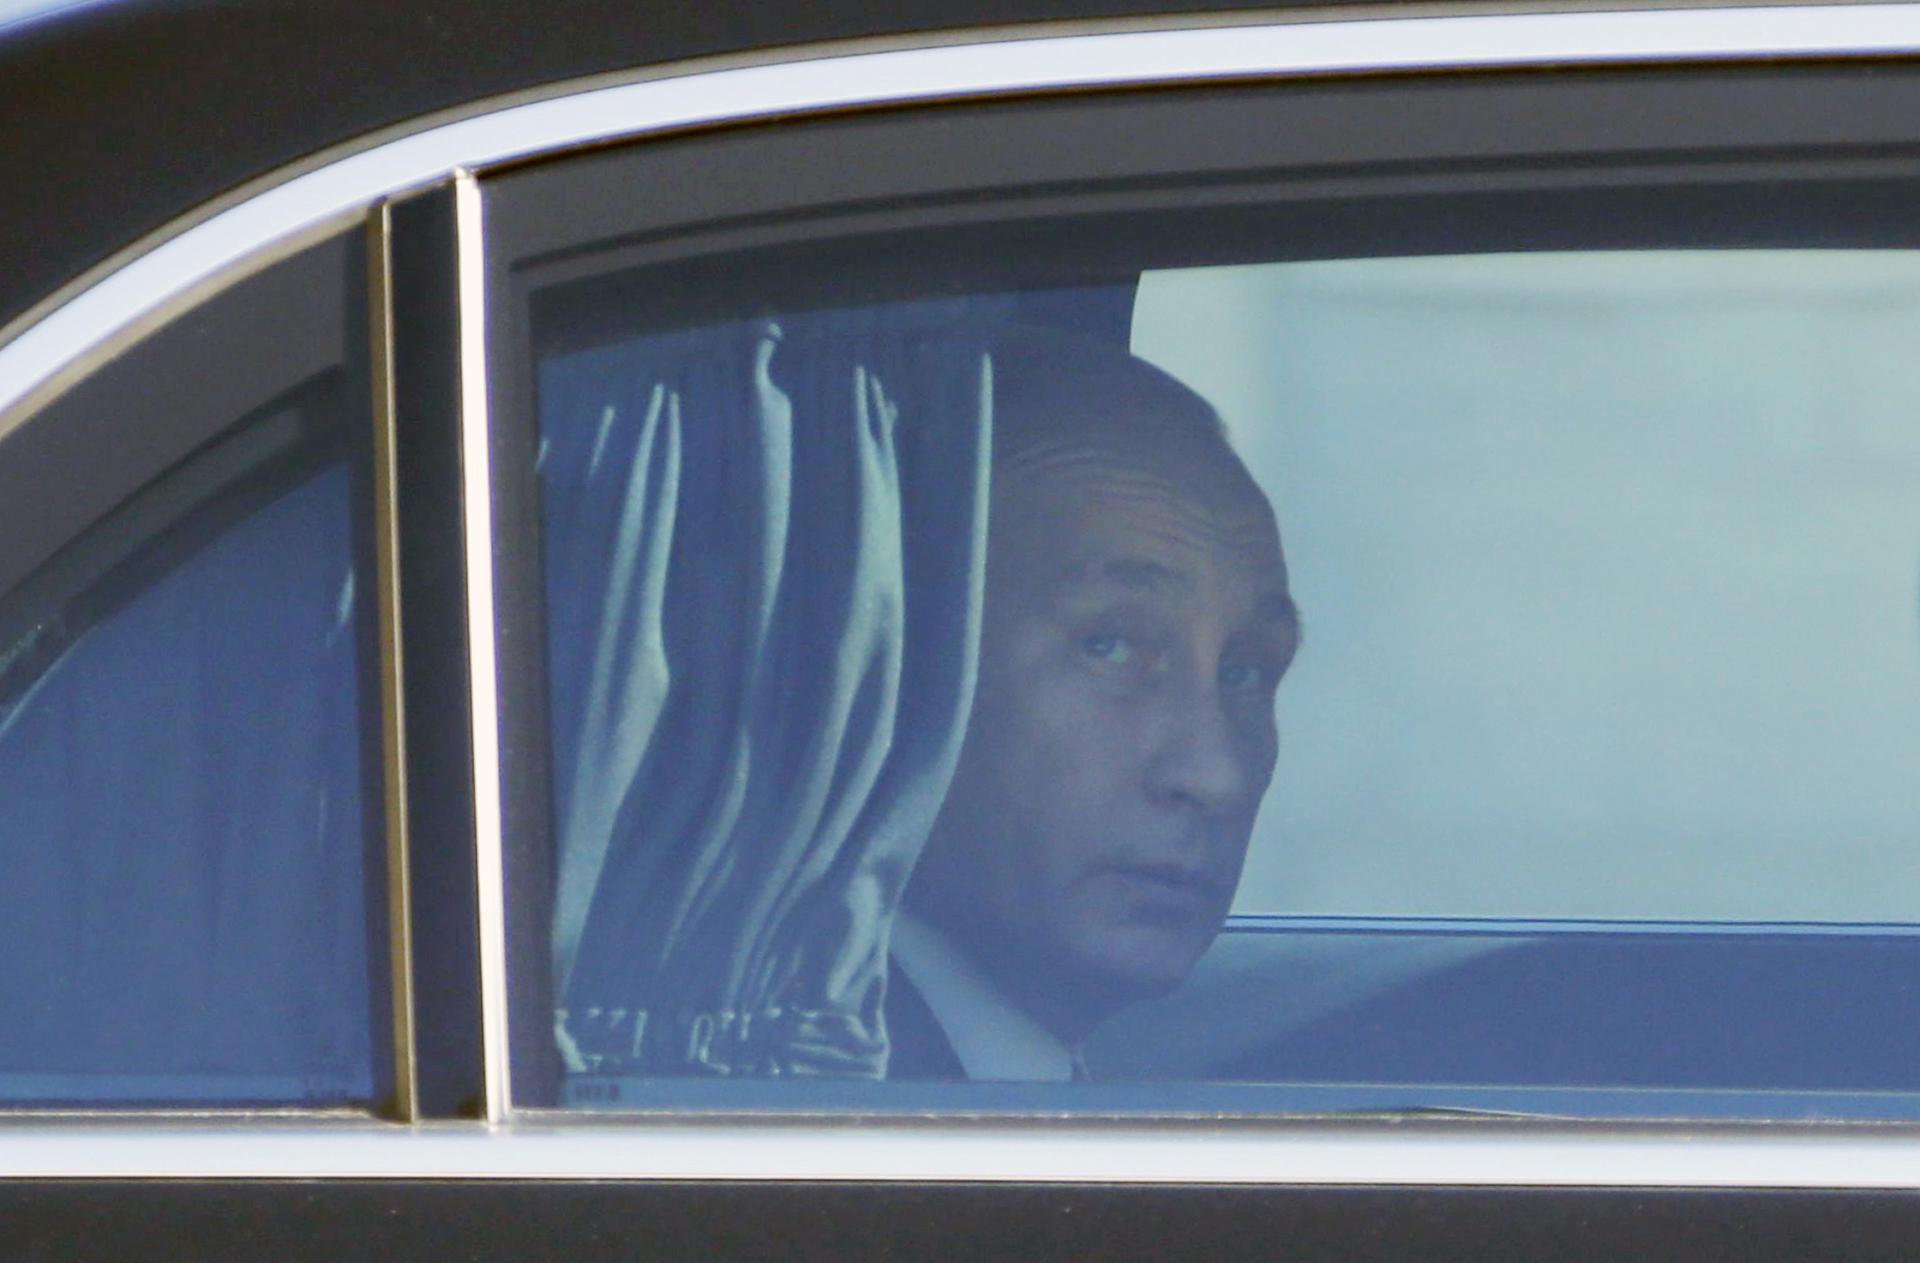 Sve su to laži, od luksuza imam samo Ladu 'na sva 4', kaže Putin